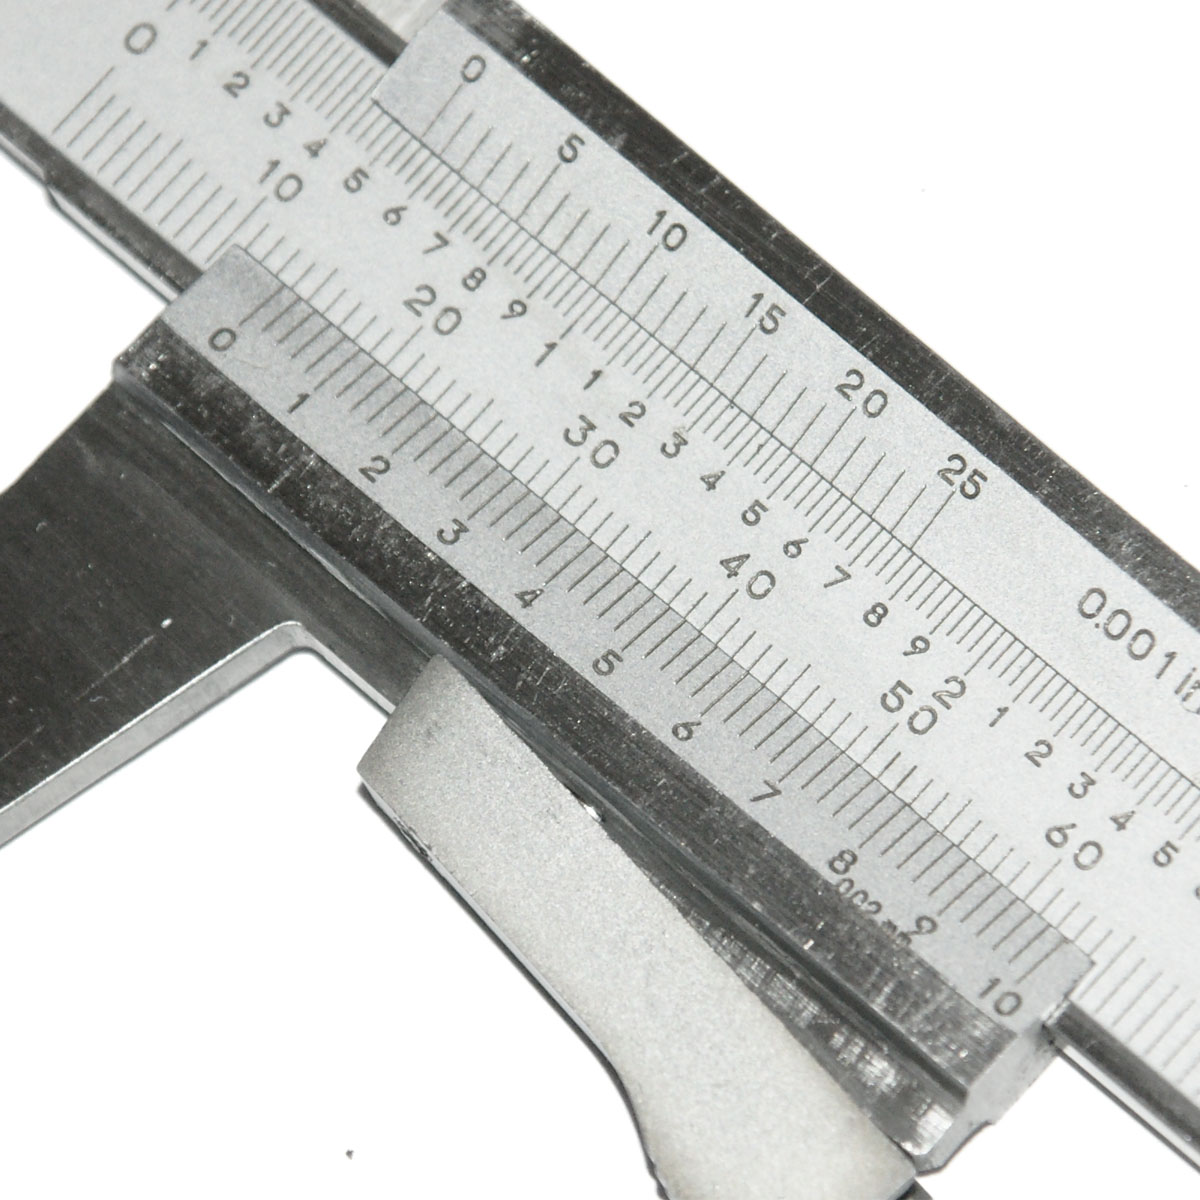 Messschieber, 150 mm / 200 mm / 300 mm Nonius-Messlehre aus  kohlenstoffreichem Stahl zum Messen von Breite, Außendurchmesser,  Innendurchmesser, Tiefe (0-150 mm)